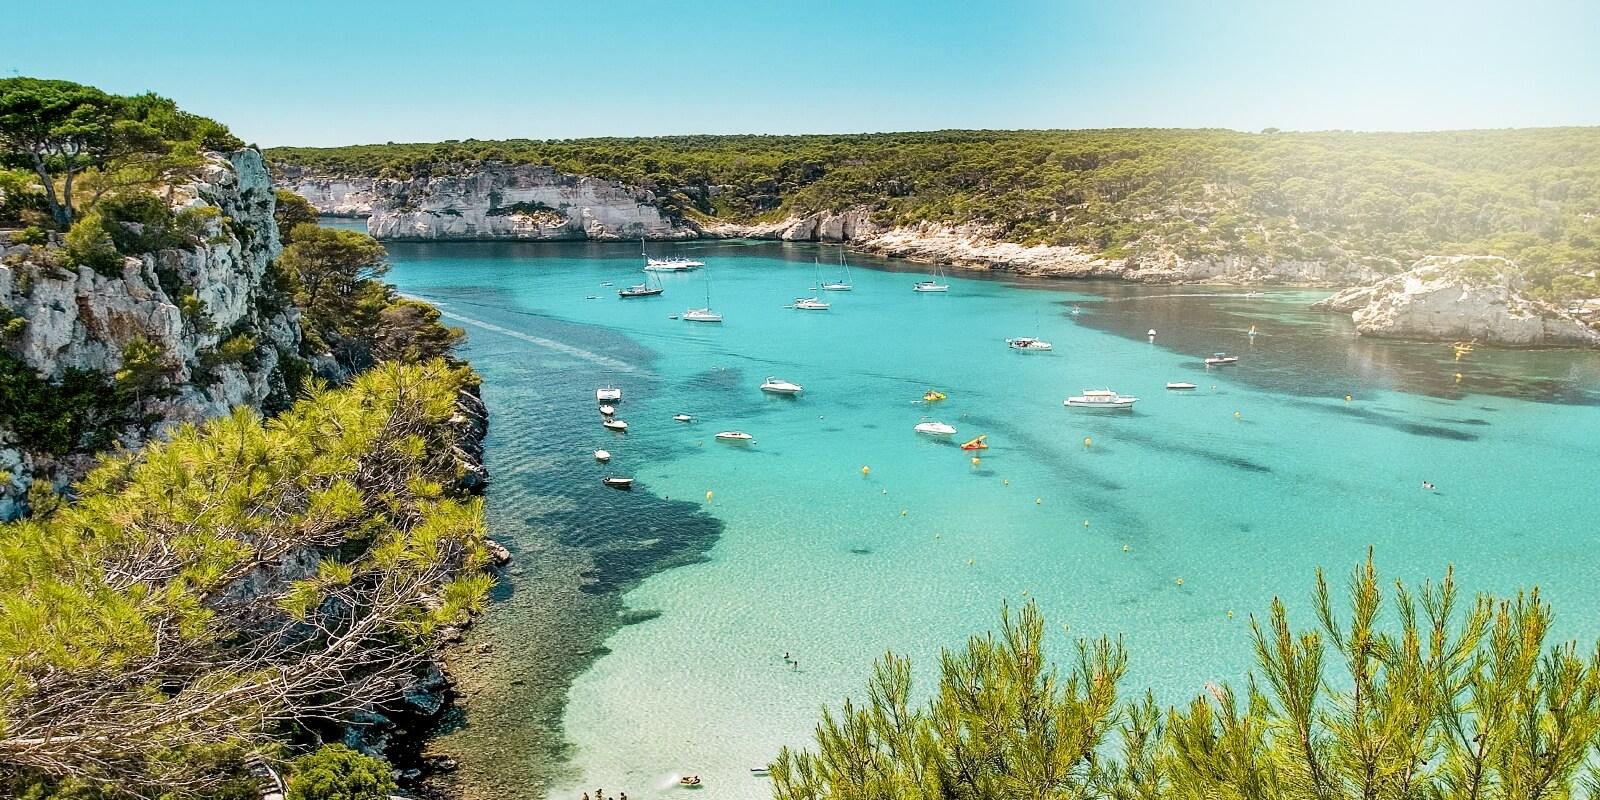 Vakantie Menorca